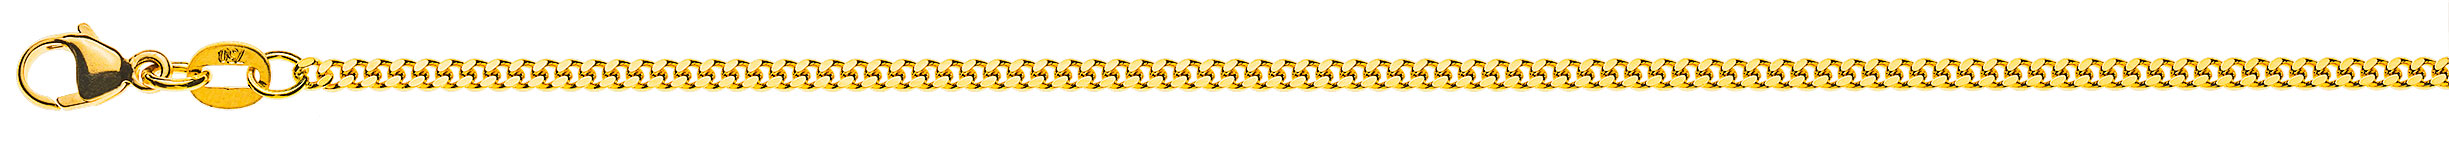 AURONOS Prestige Halskette Gelbgold 18K Panzerkette geschliffen 60cm 2.0mm